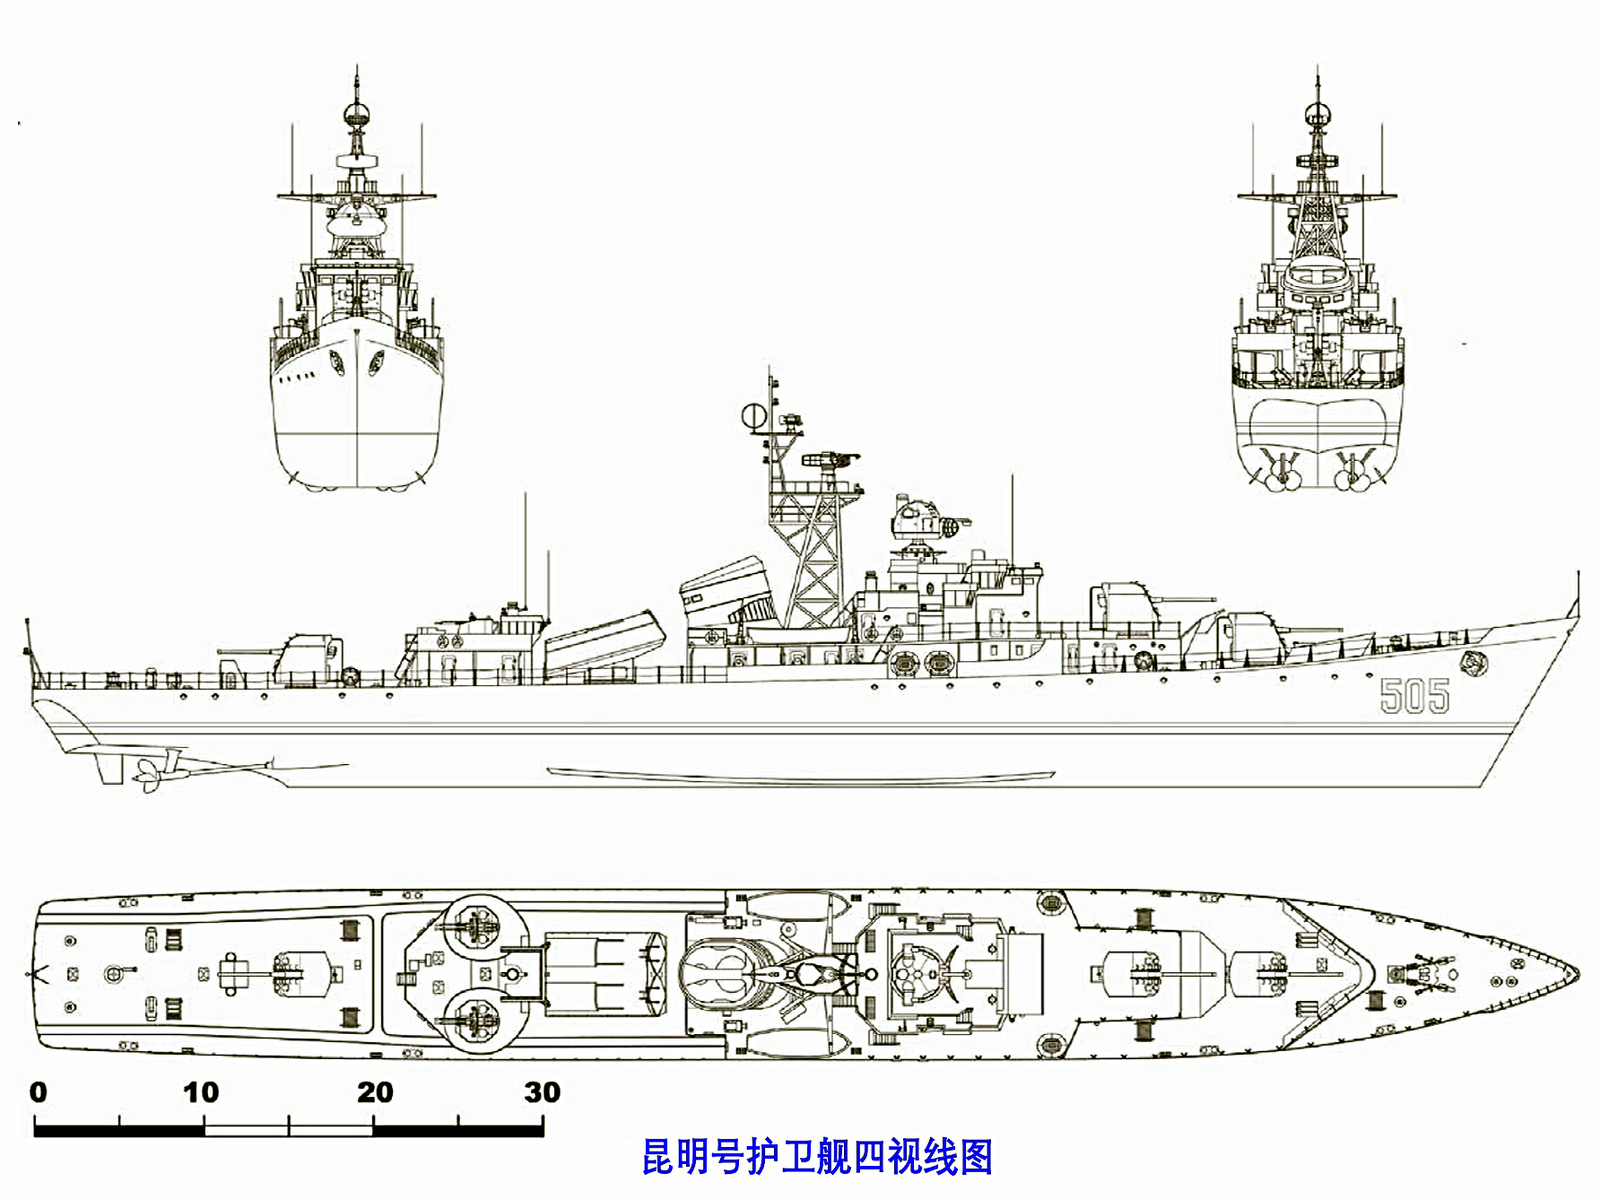 01型護衛艦昆明號四視線圖